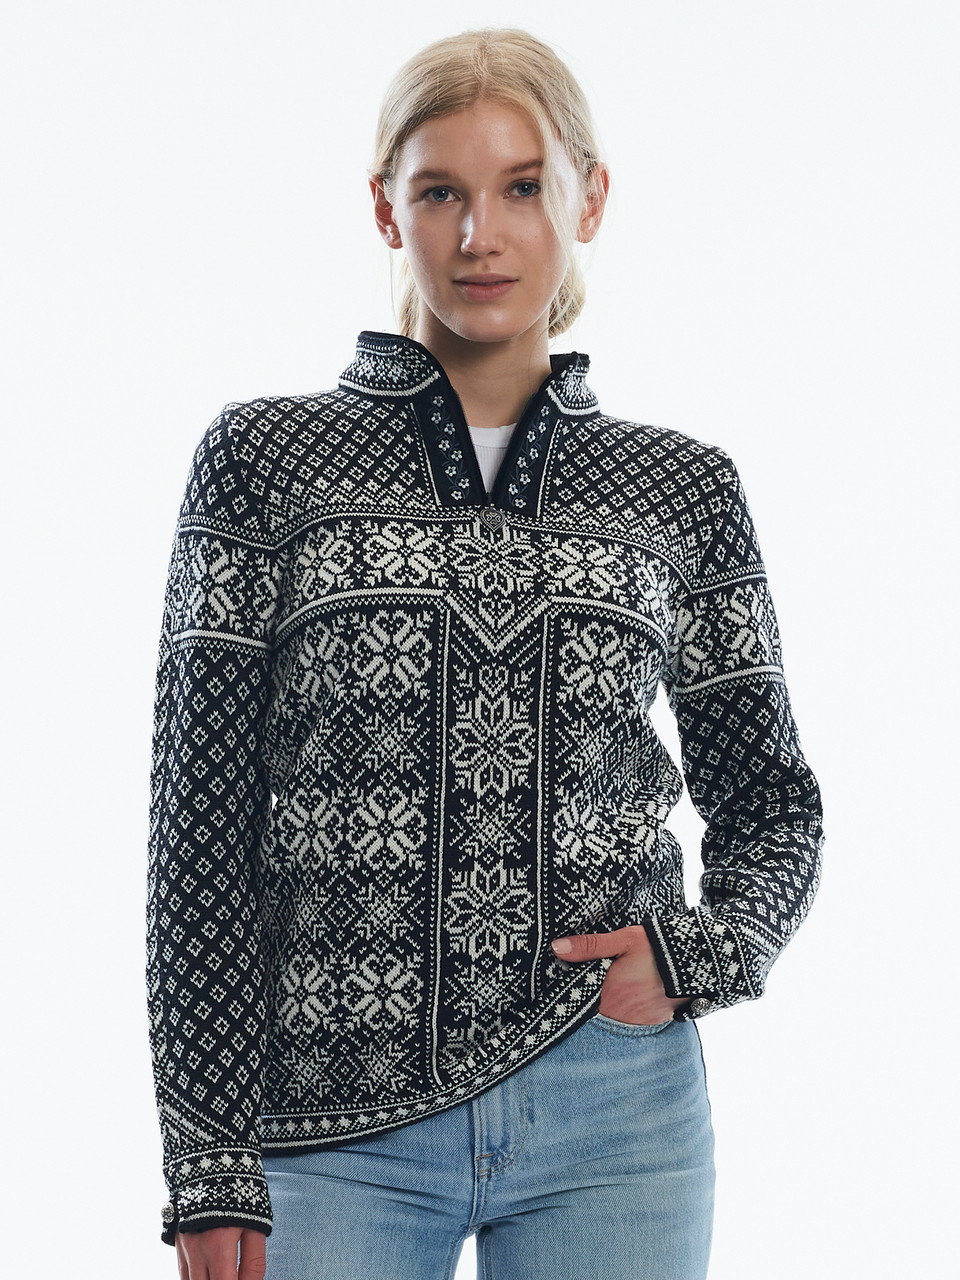 Peace Women's Sweater - Scandinavian Gift Shop